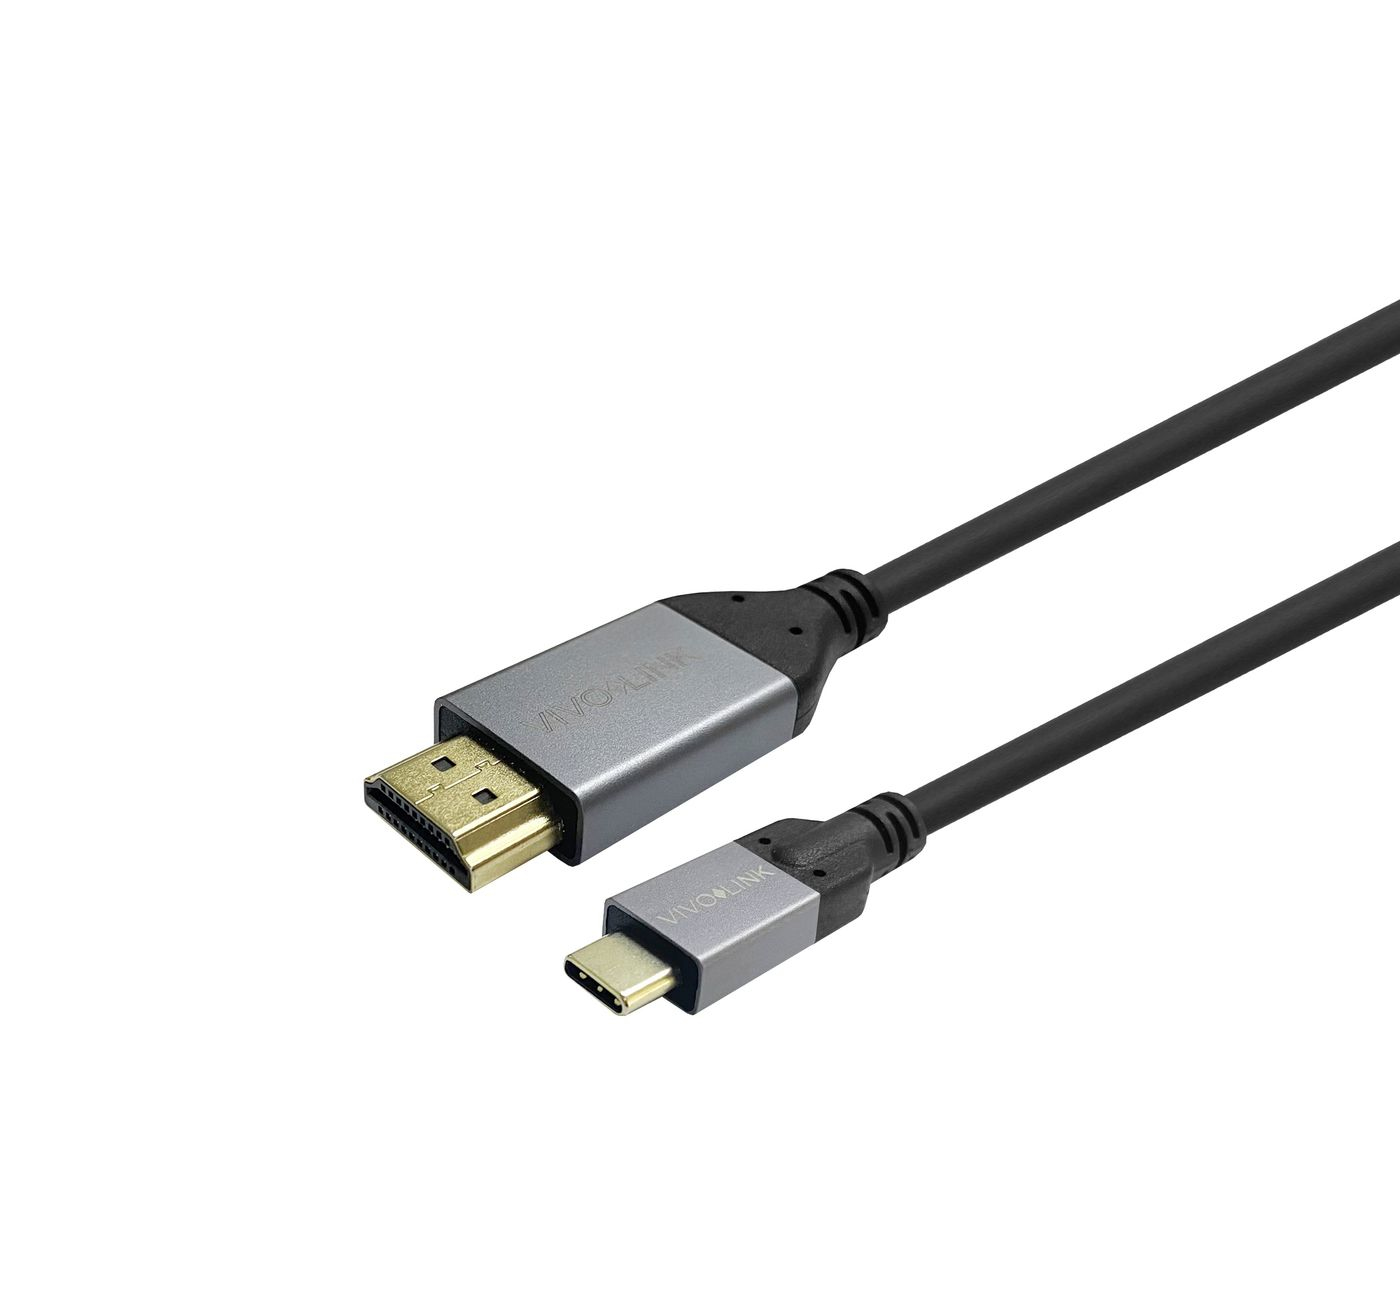 Photos - Cable (video, audio, USB) Vivolink PROUSBCHDMIMM4 USB cable 4 m USB 3.2 Gen 1  USB C (3.1 Gen 1)